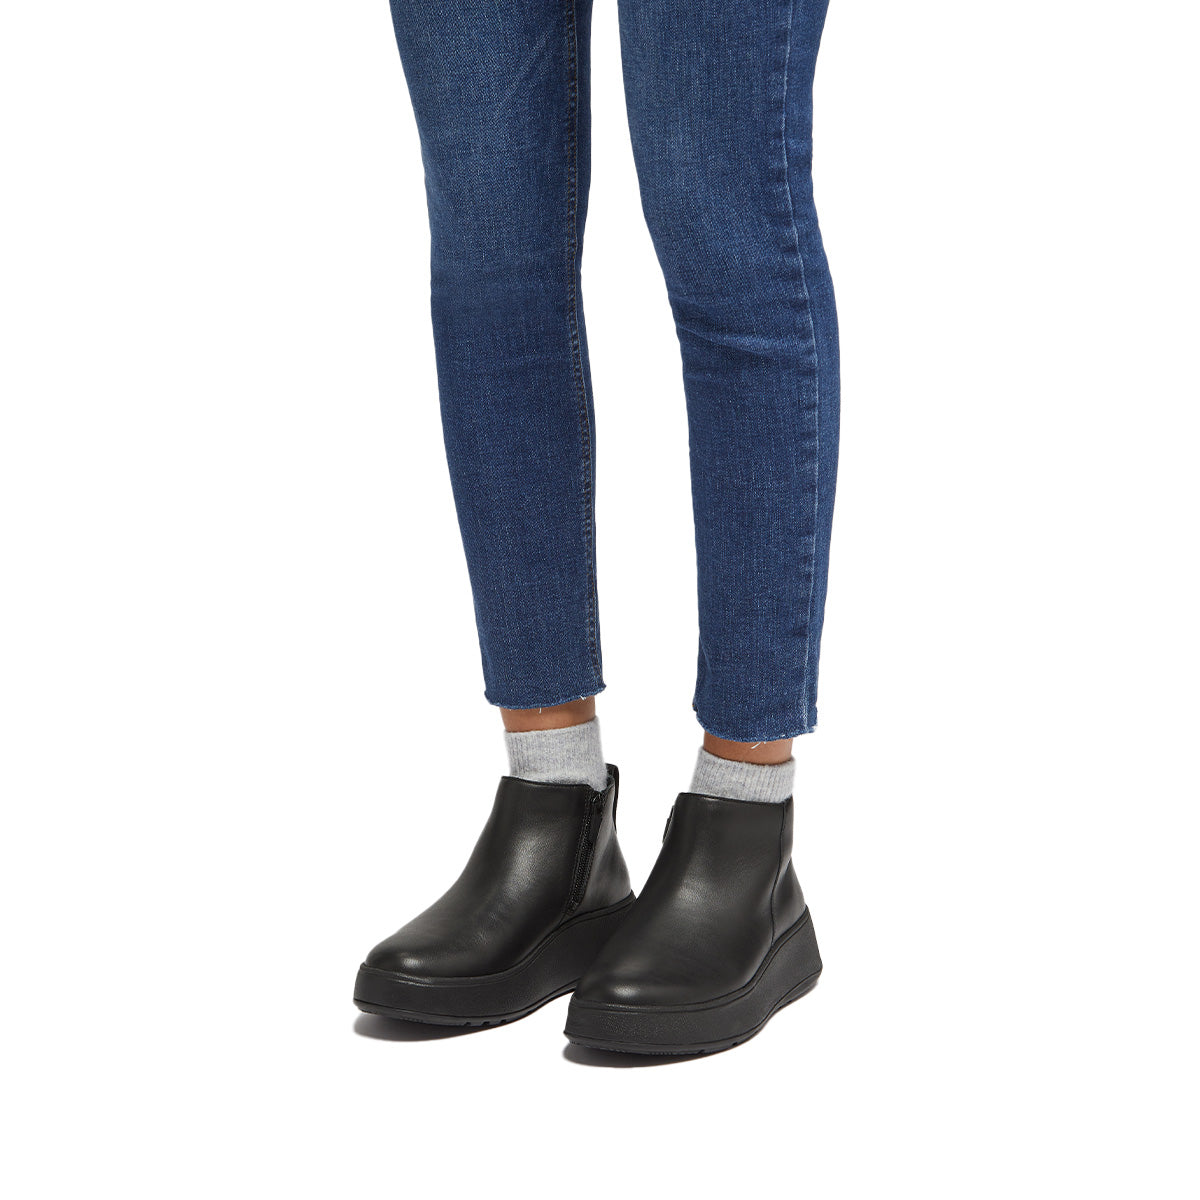 Fit-Flop F-Mode Flatform Zip Ankle Boots Black פ-מוד פלאט פורם שחור נשים